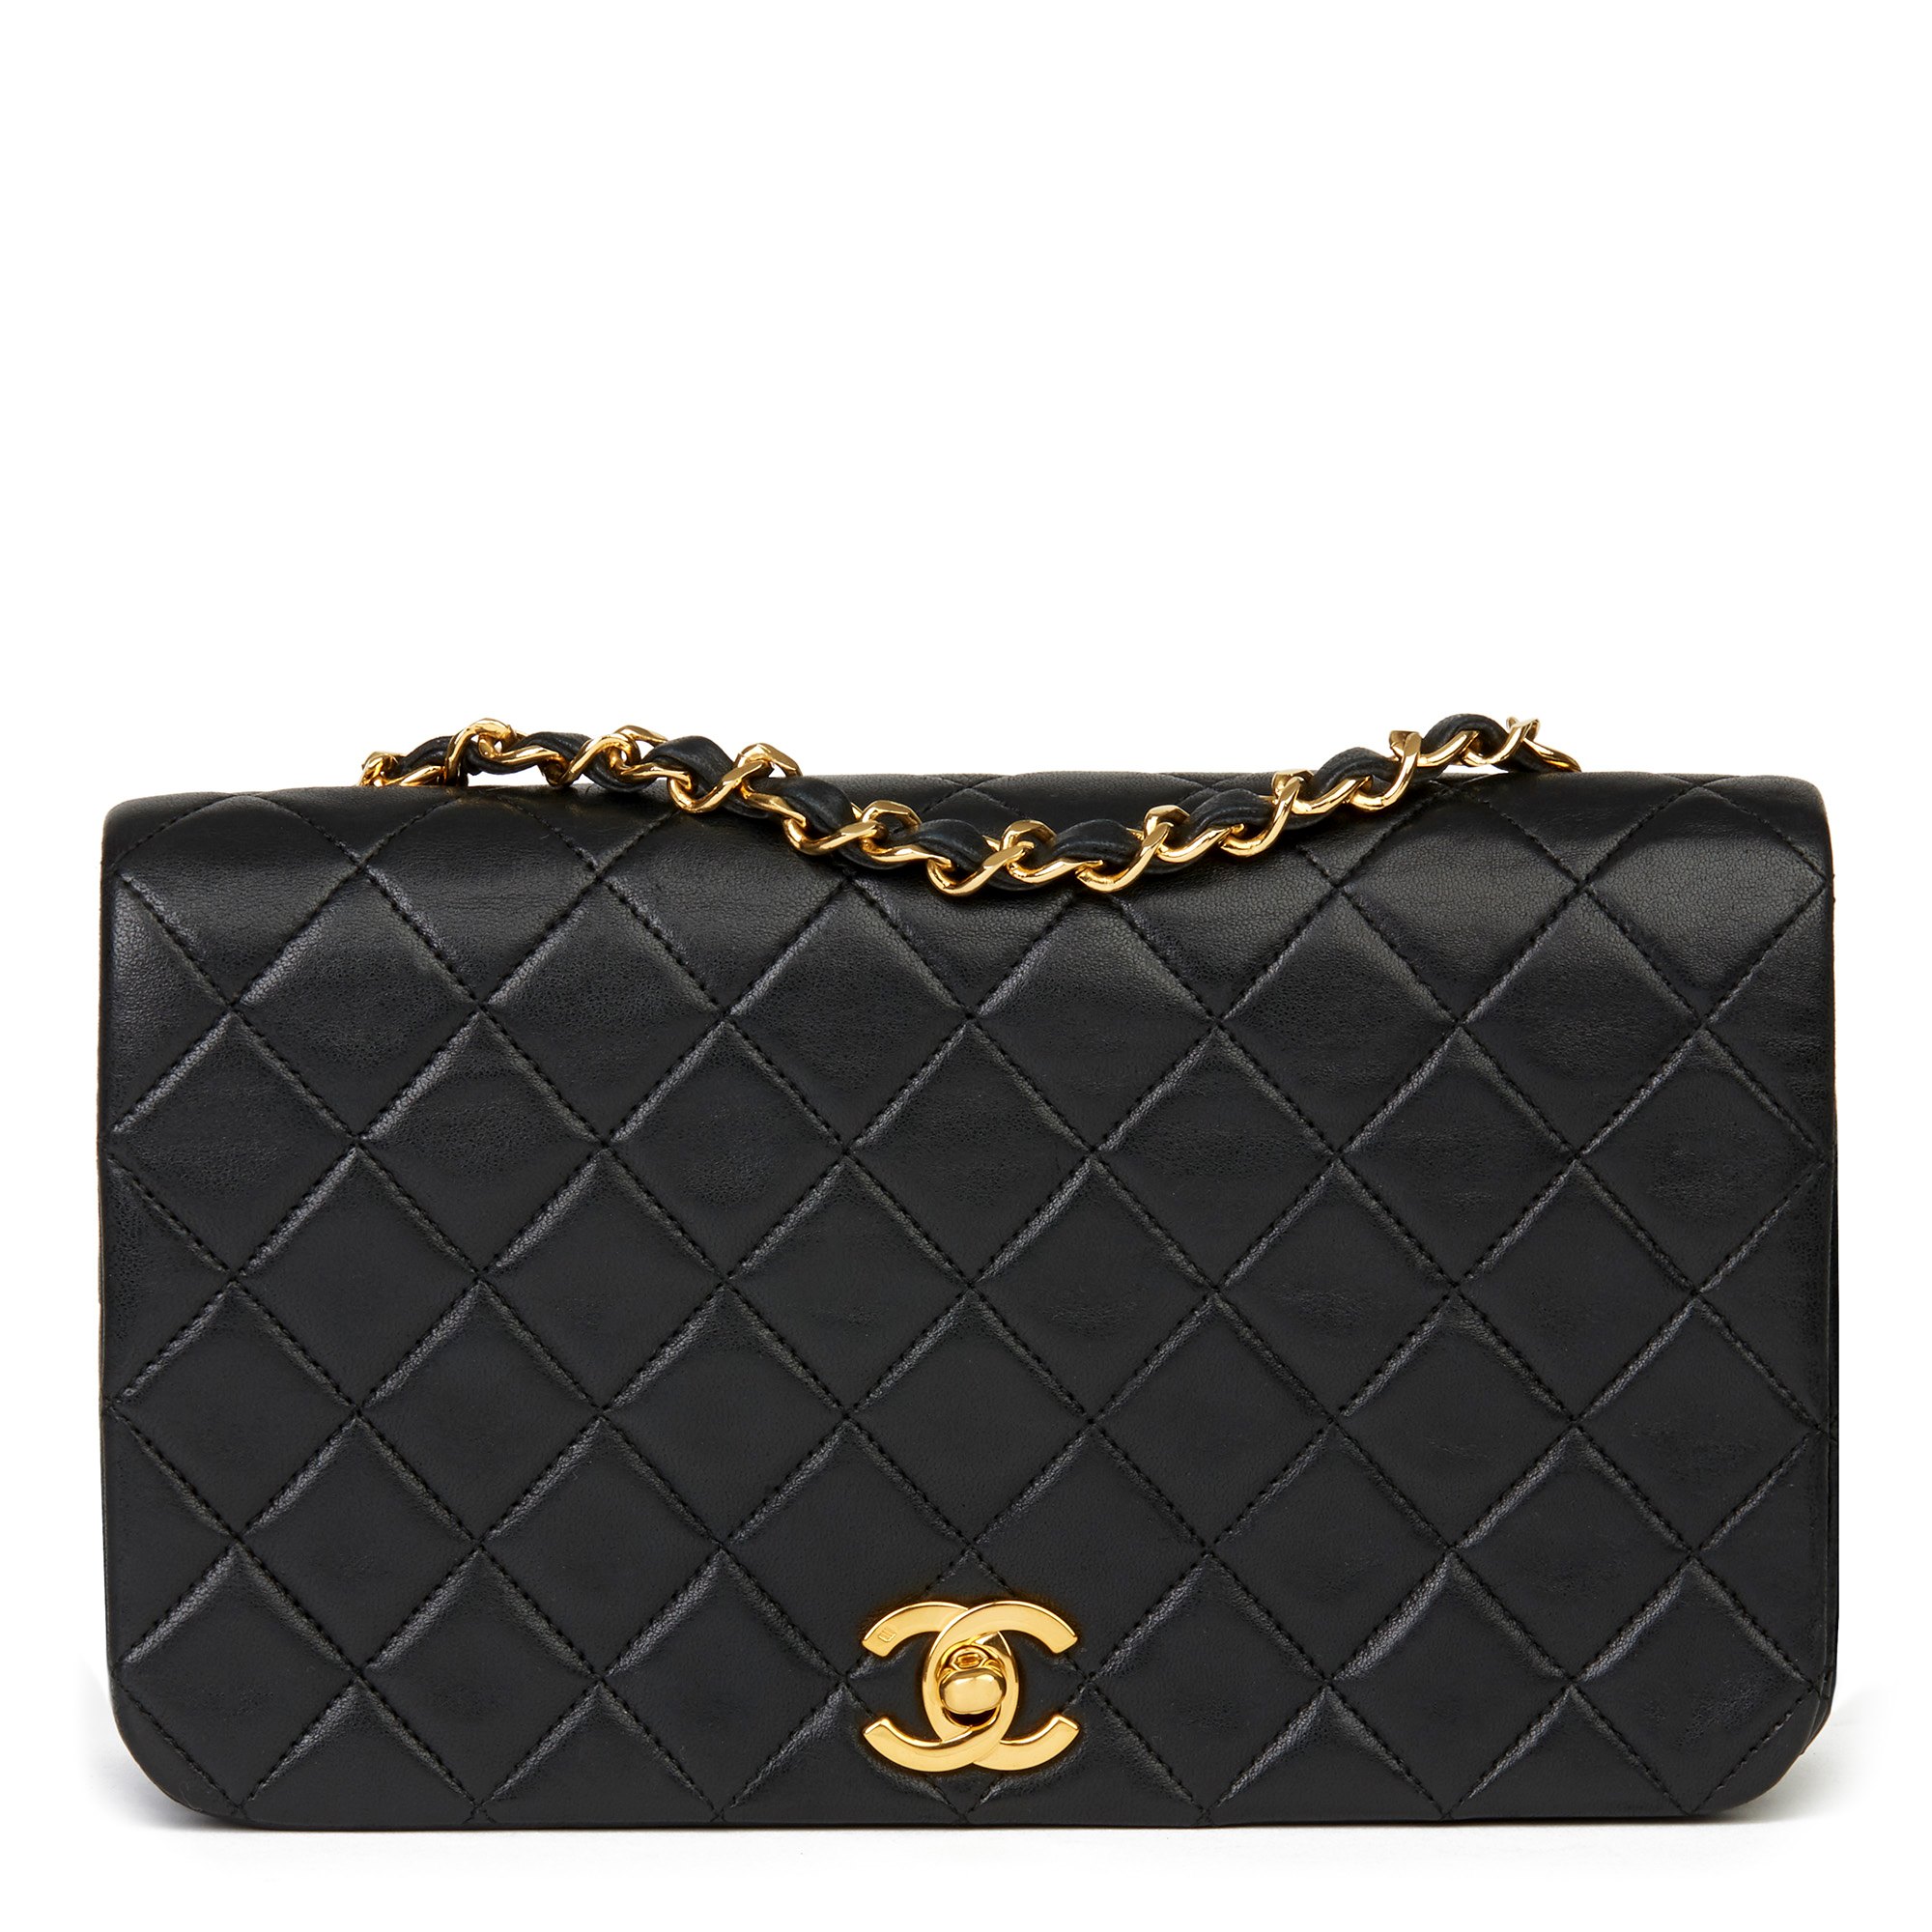 Chanel Mini Classic Flap Handbag | IQS Executive